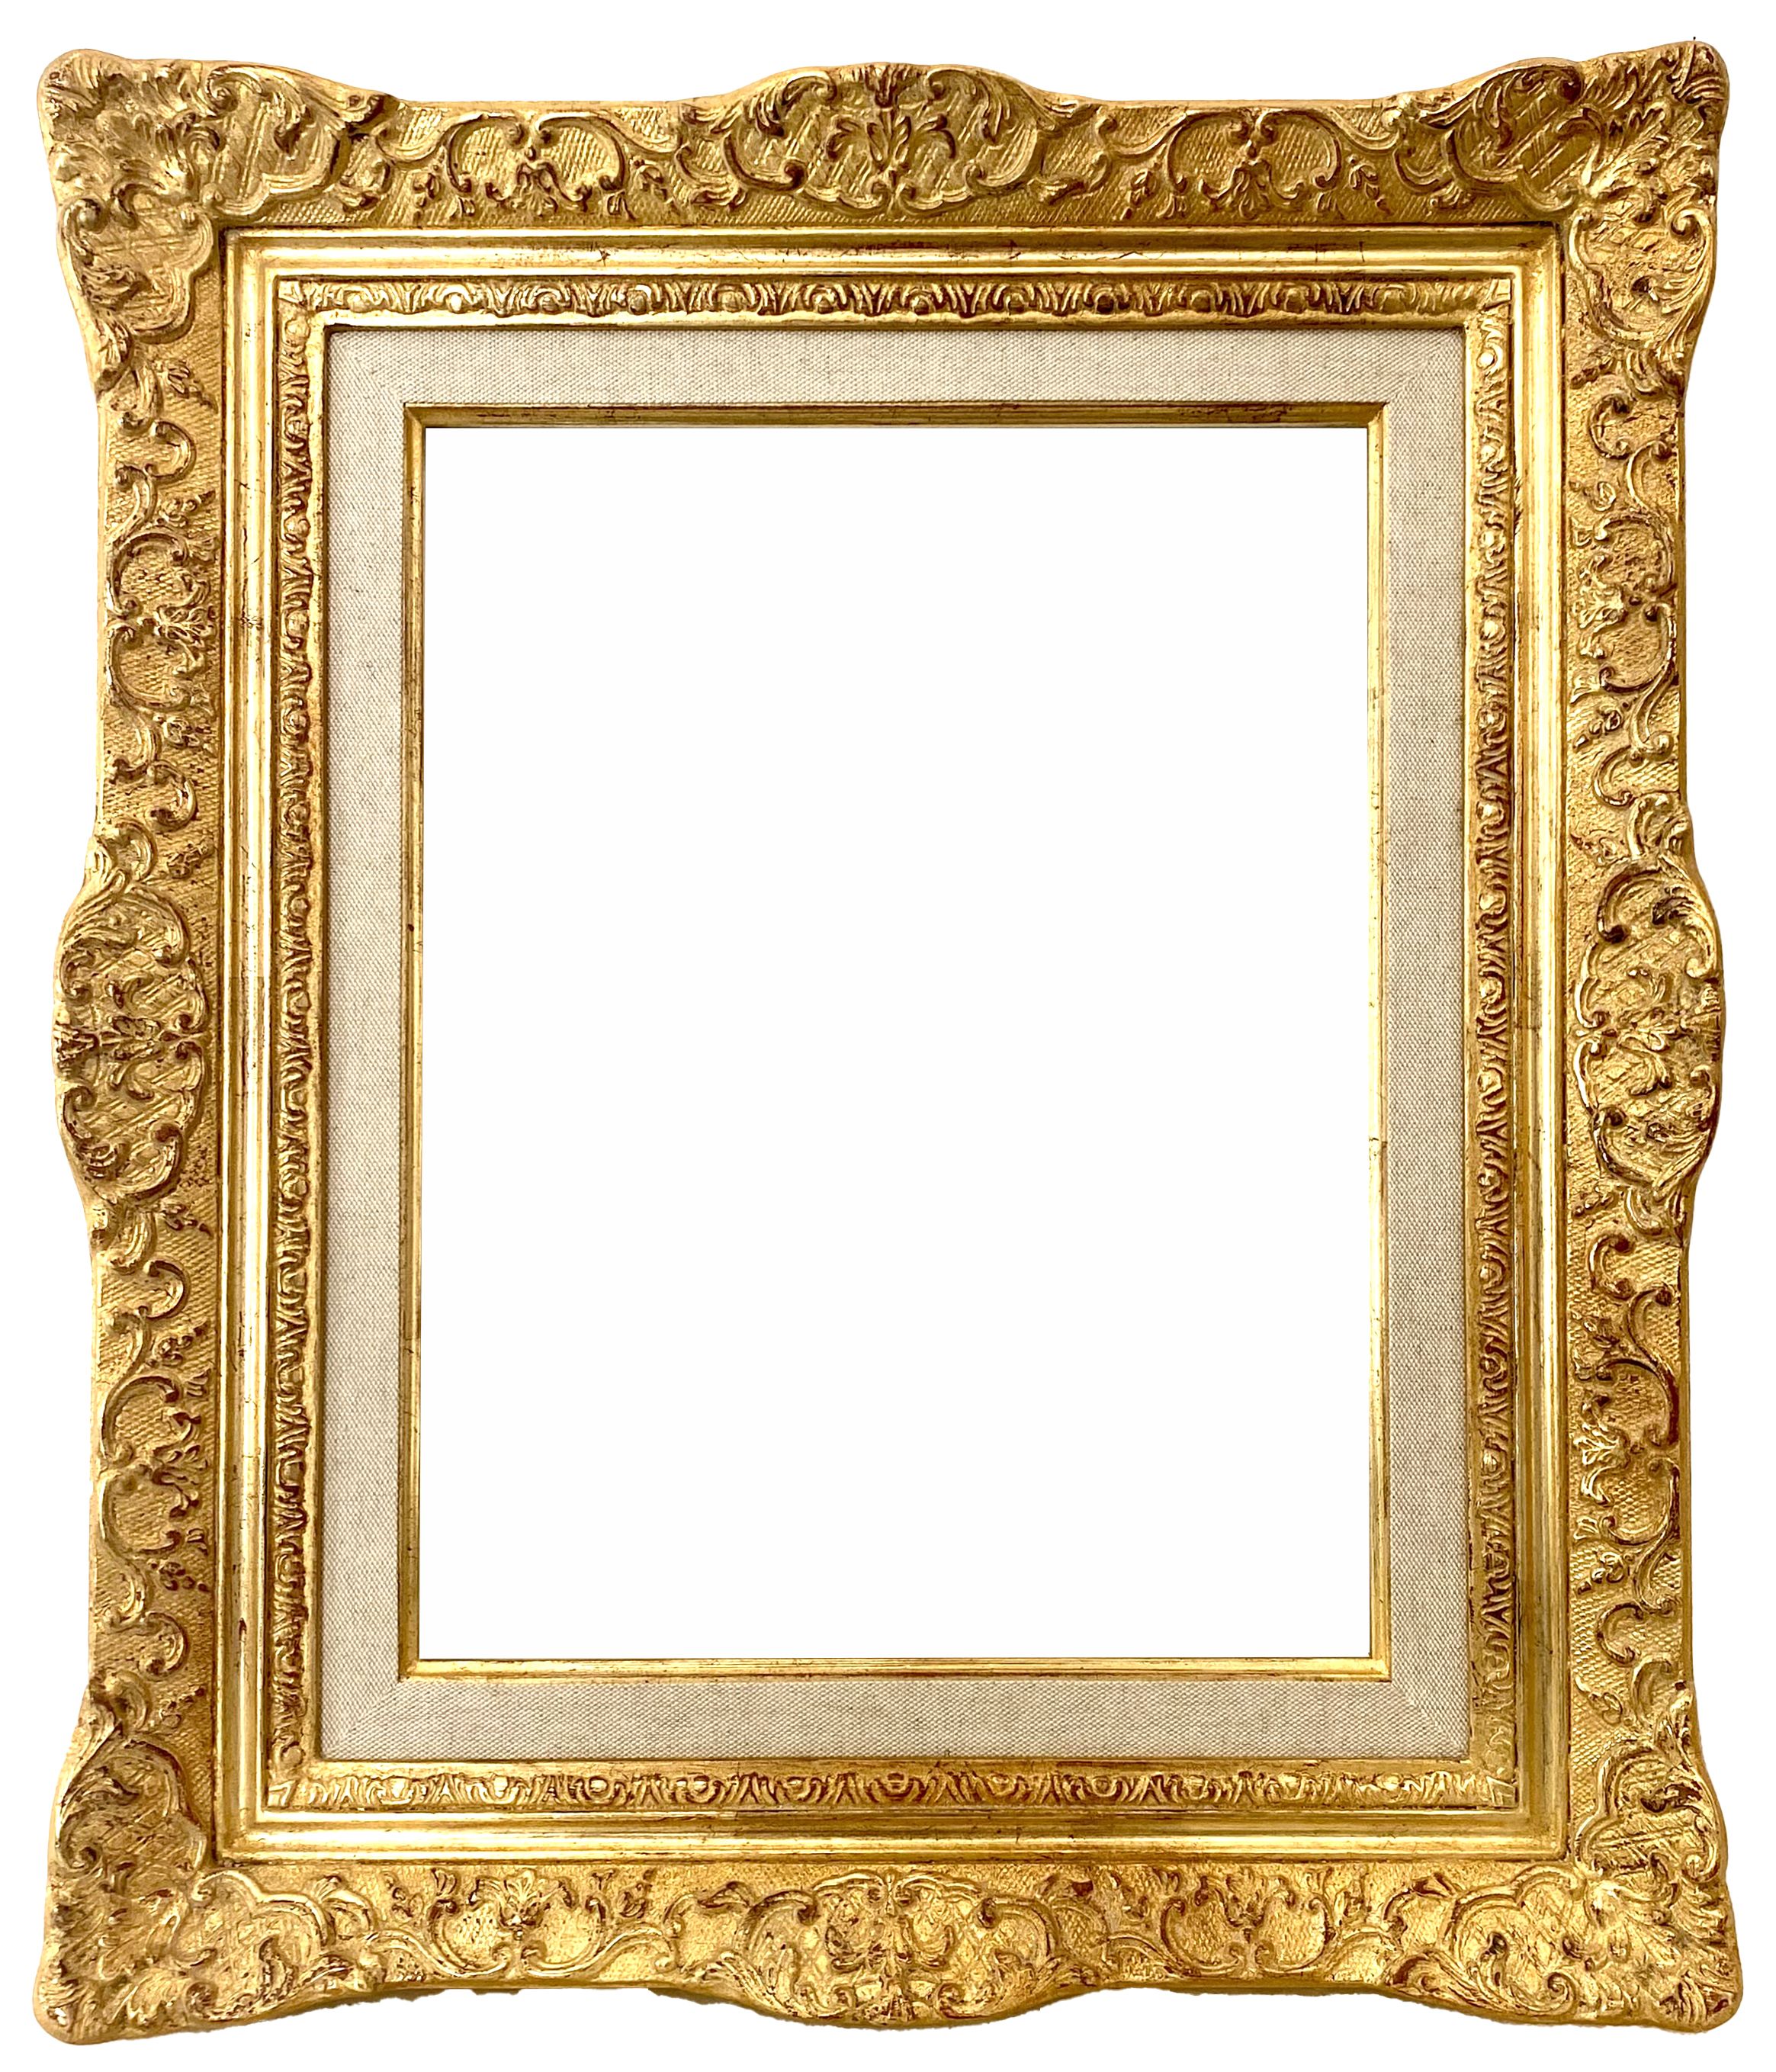 Cadre de style louis XIV - 36,30 x 28,20 - REF - 1642